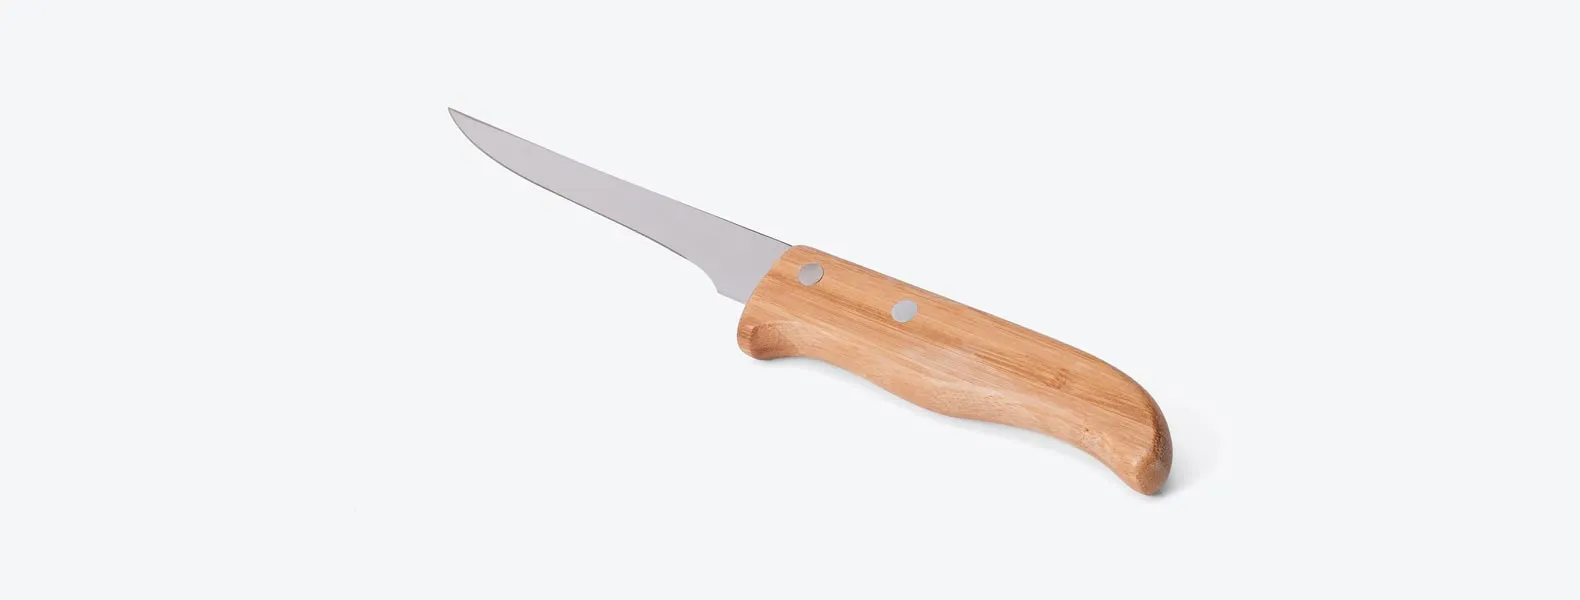 Kit com faca 8'', faca 5 para desossar e garfo em Bambu/Inox. Como cortesia, na faca 8 fazemos uma gravação com os cortes do boi.